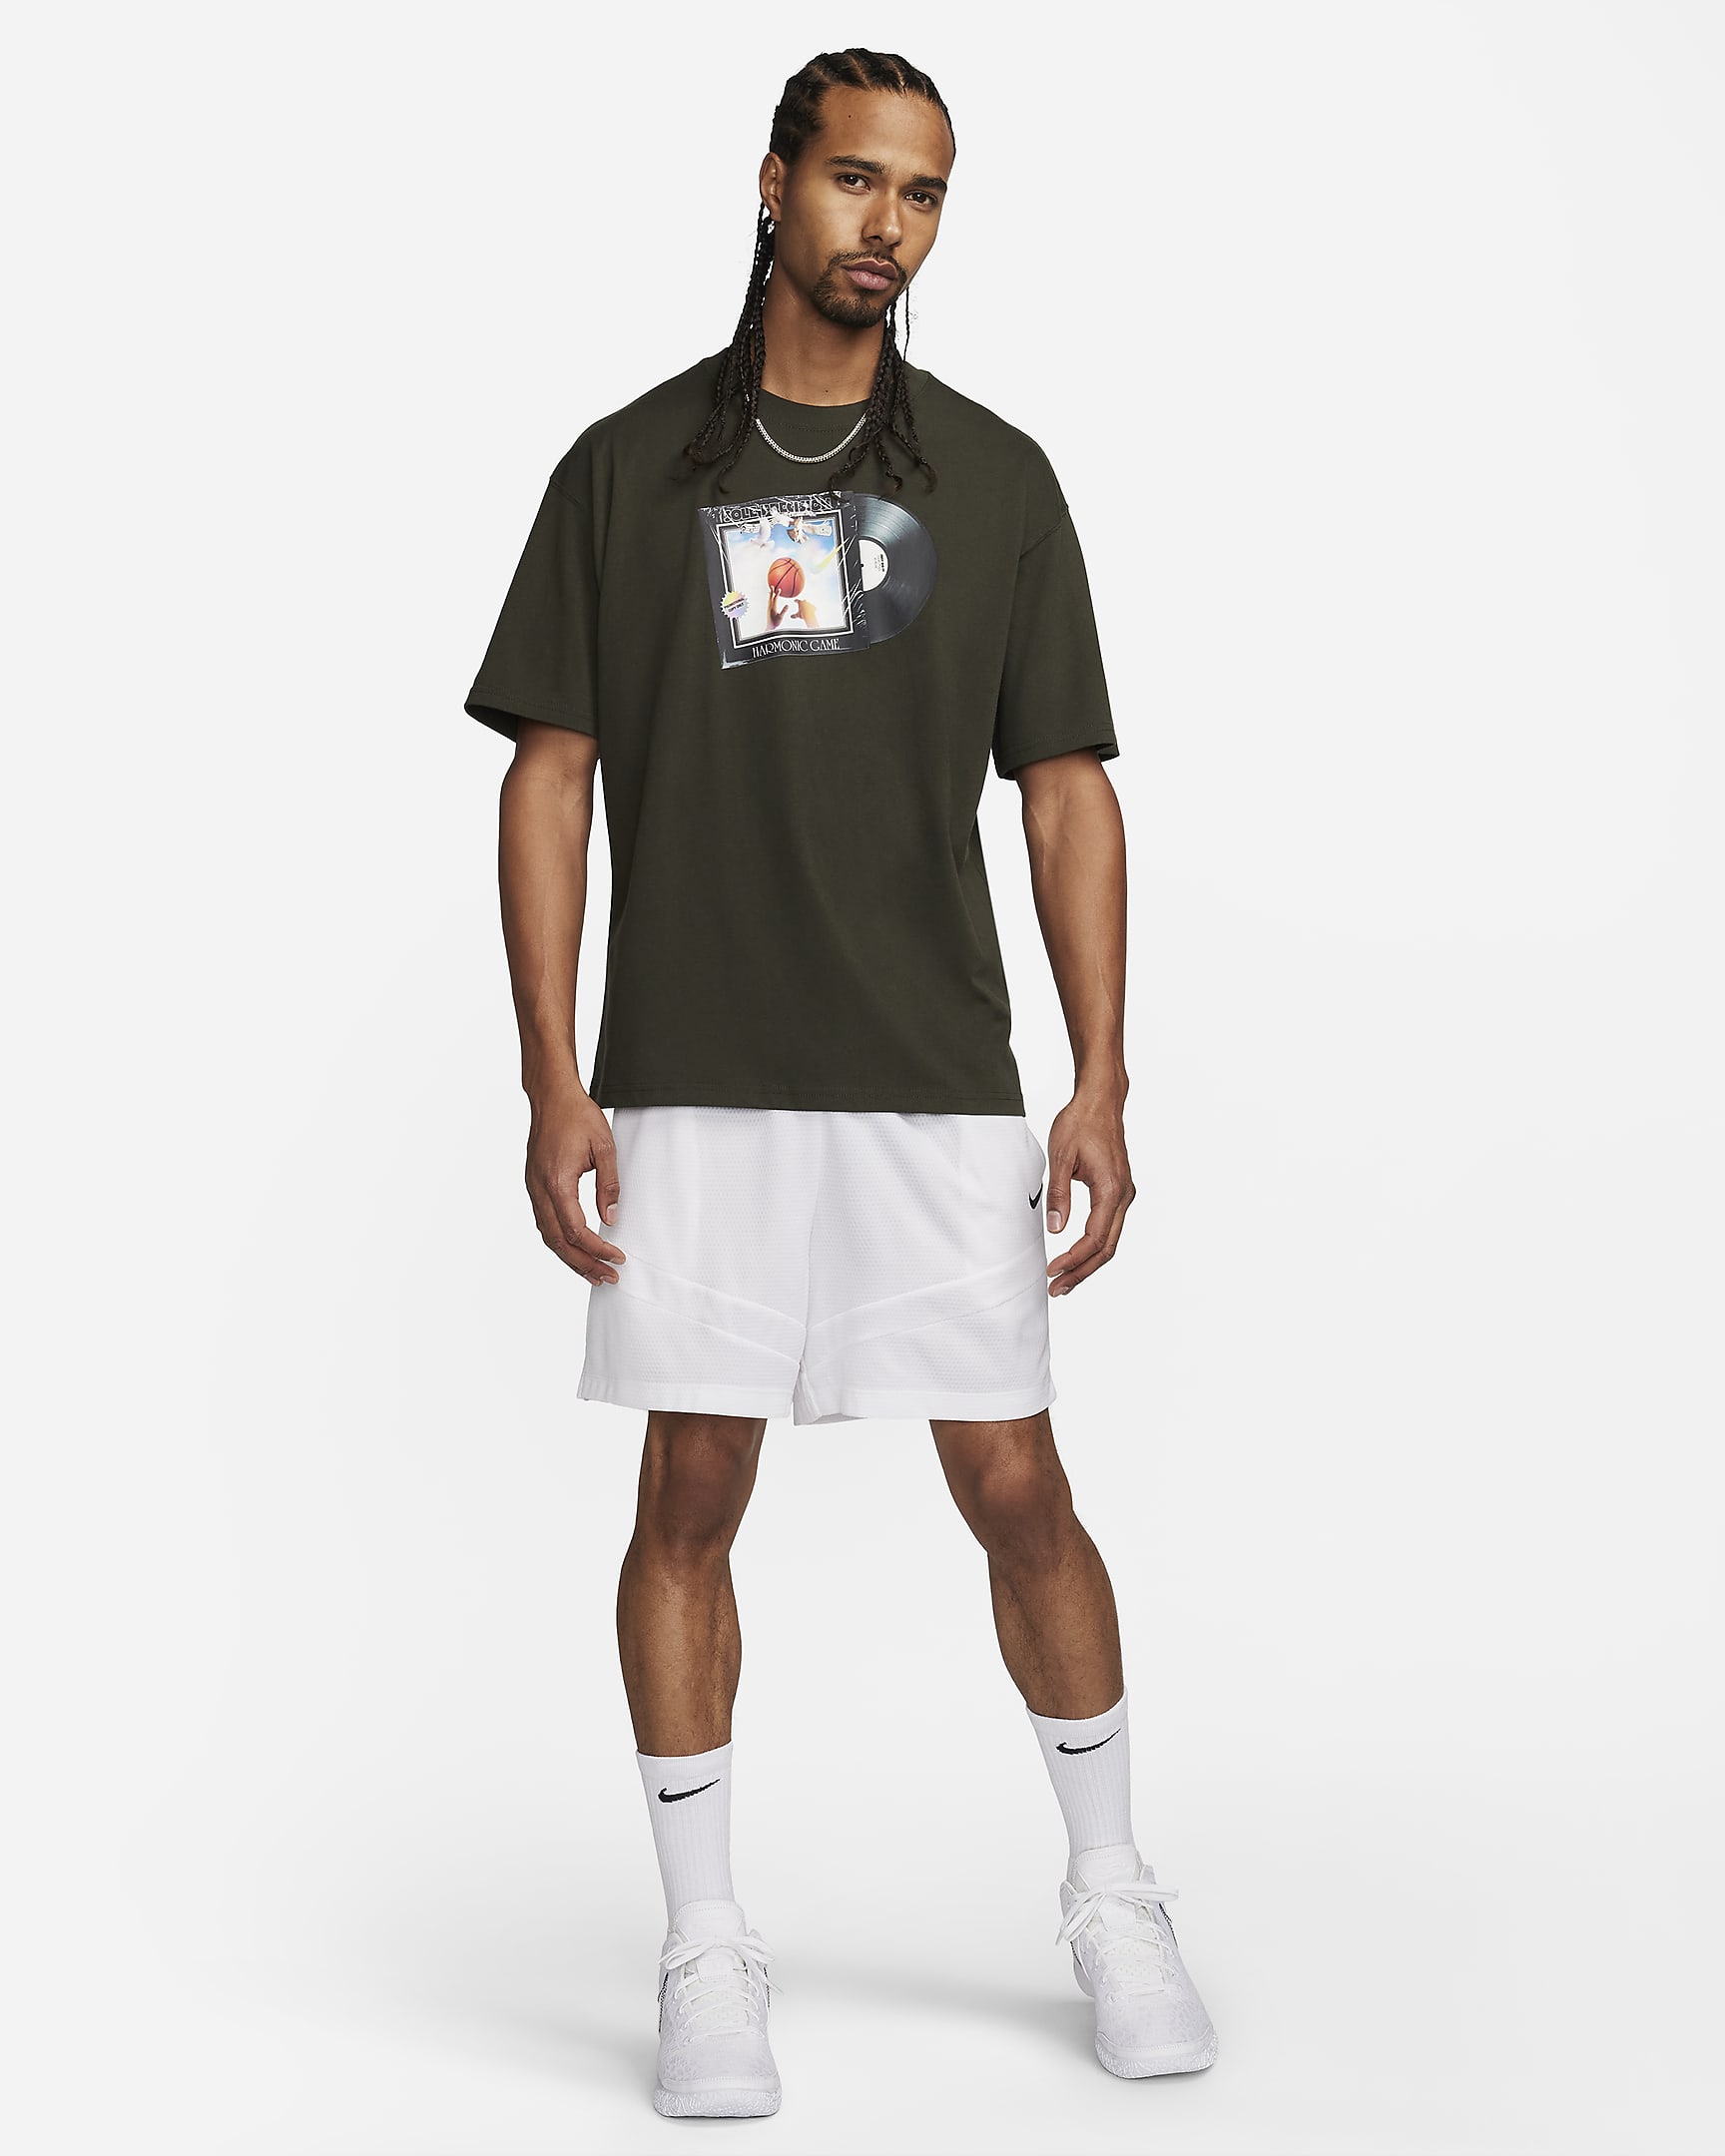 Nike Men's Max90 Basketball T-Shirt. Nike AT